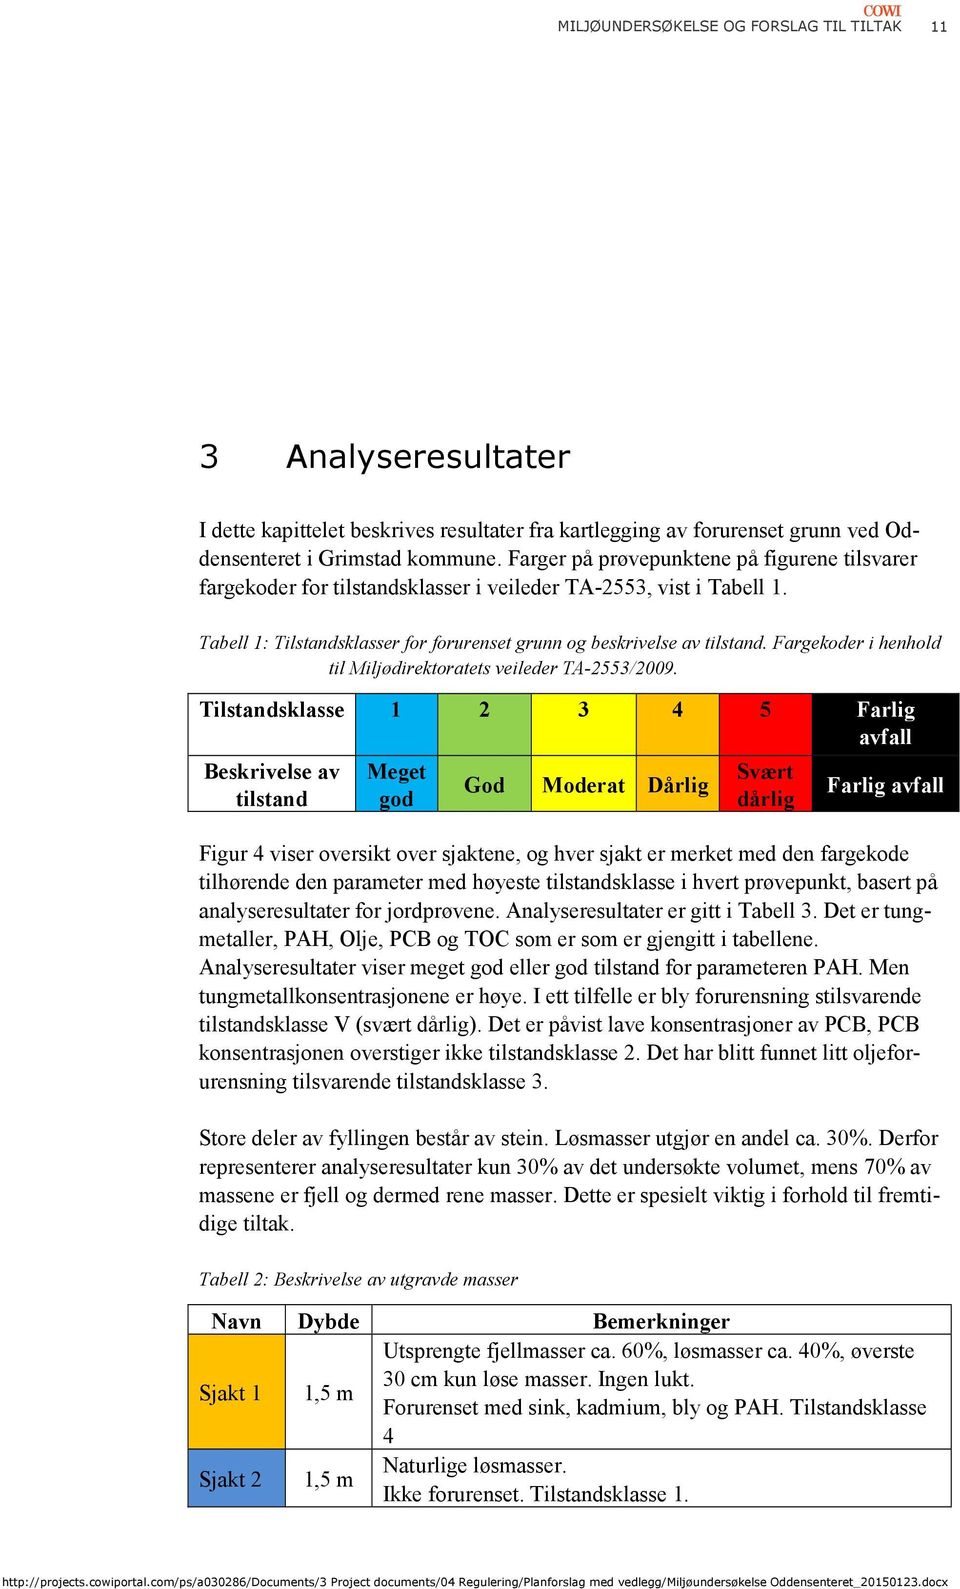 Fargekoder i henhold til Miljødirektoratets veileder TA-2553/2009.